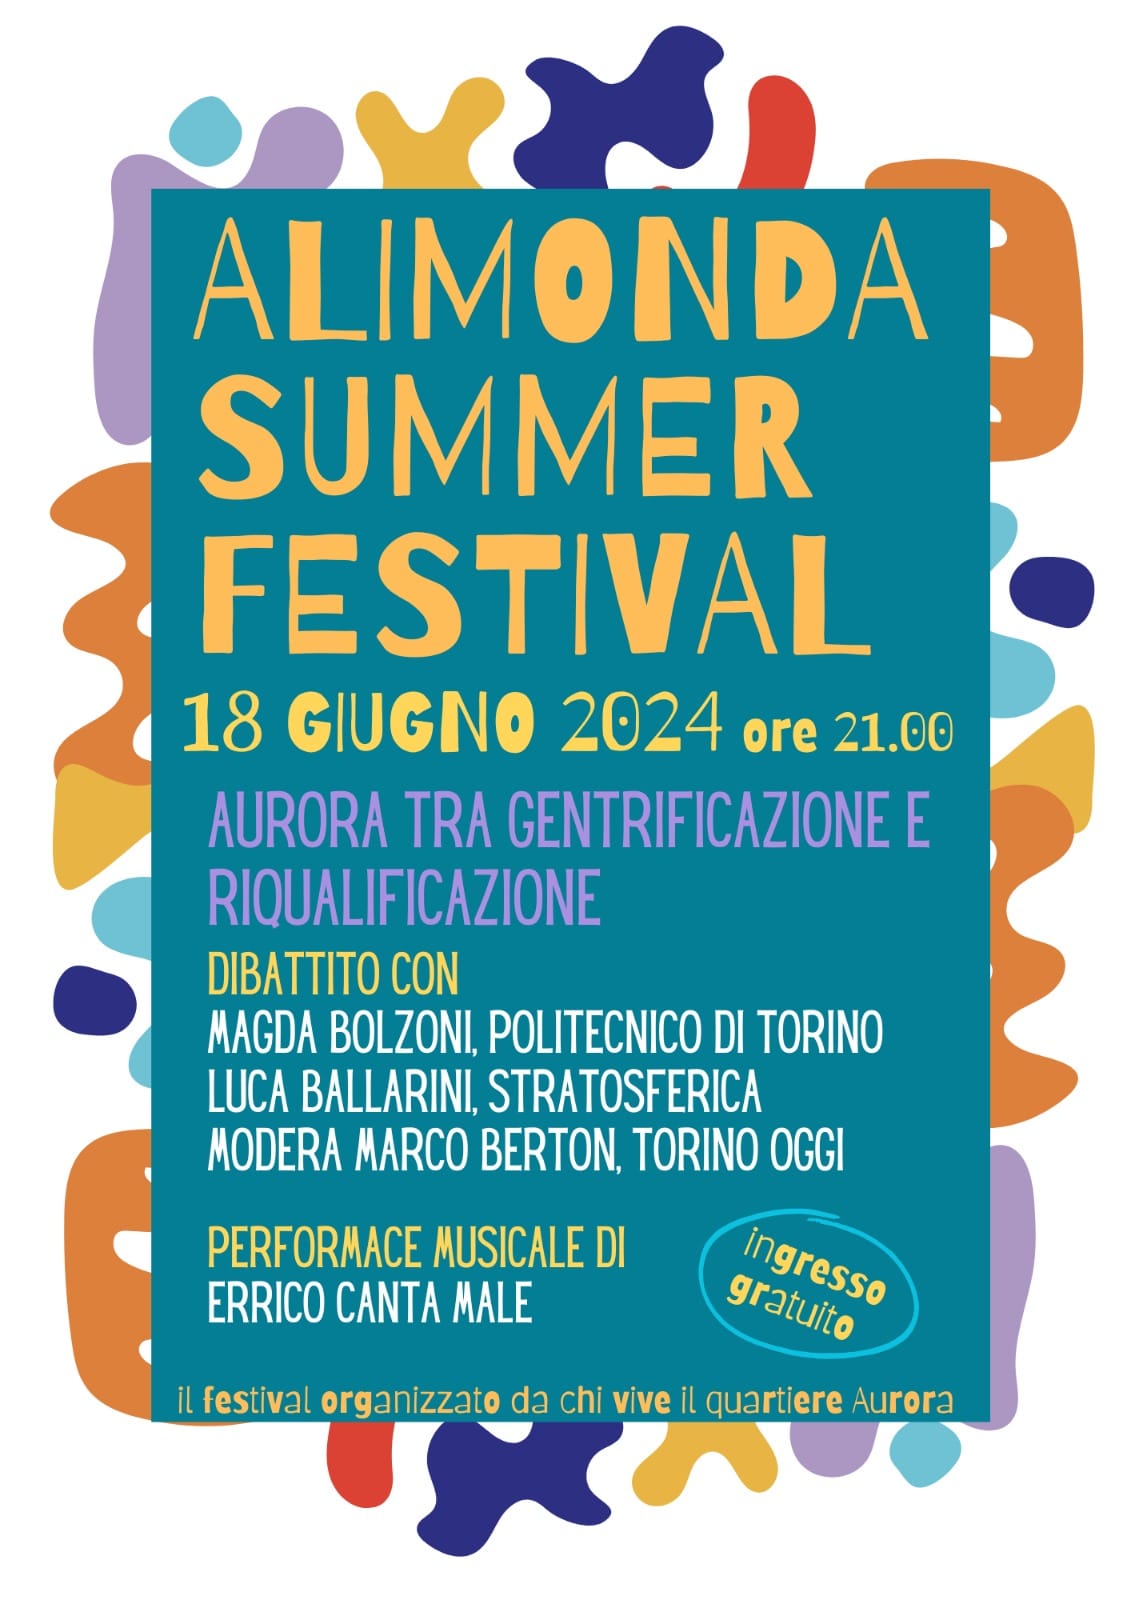 Alimonda summer festival Aurora tra gentrificazione e riqualificazione